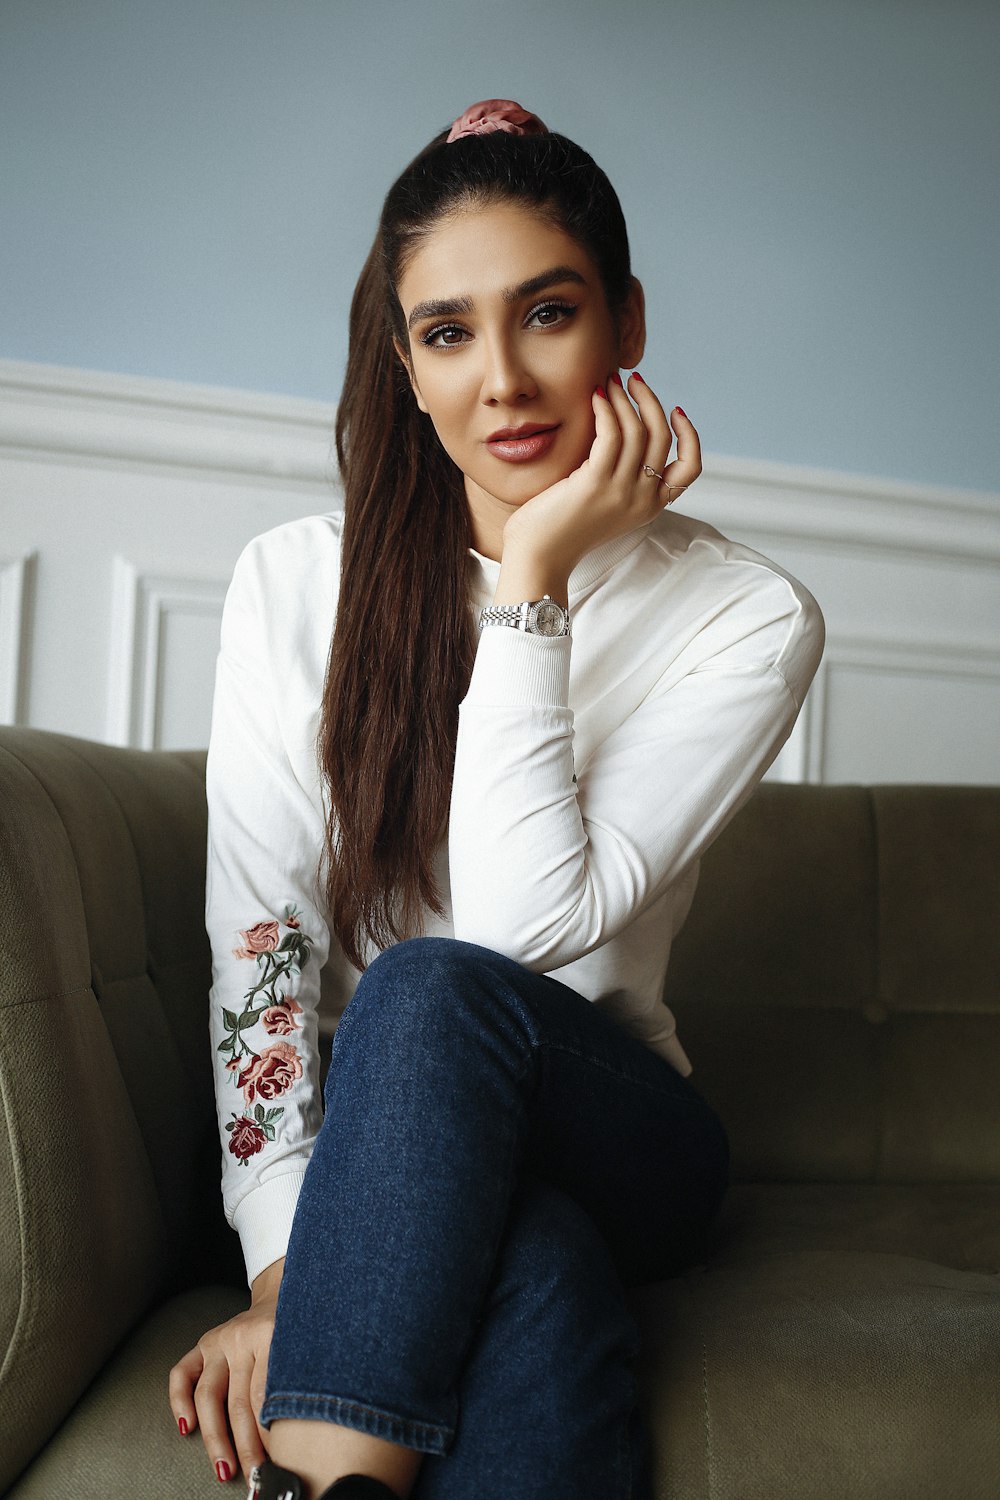 femme en chemise à manches longues blanche et jean en jean bleu assise sur un canapé gris